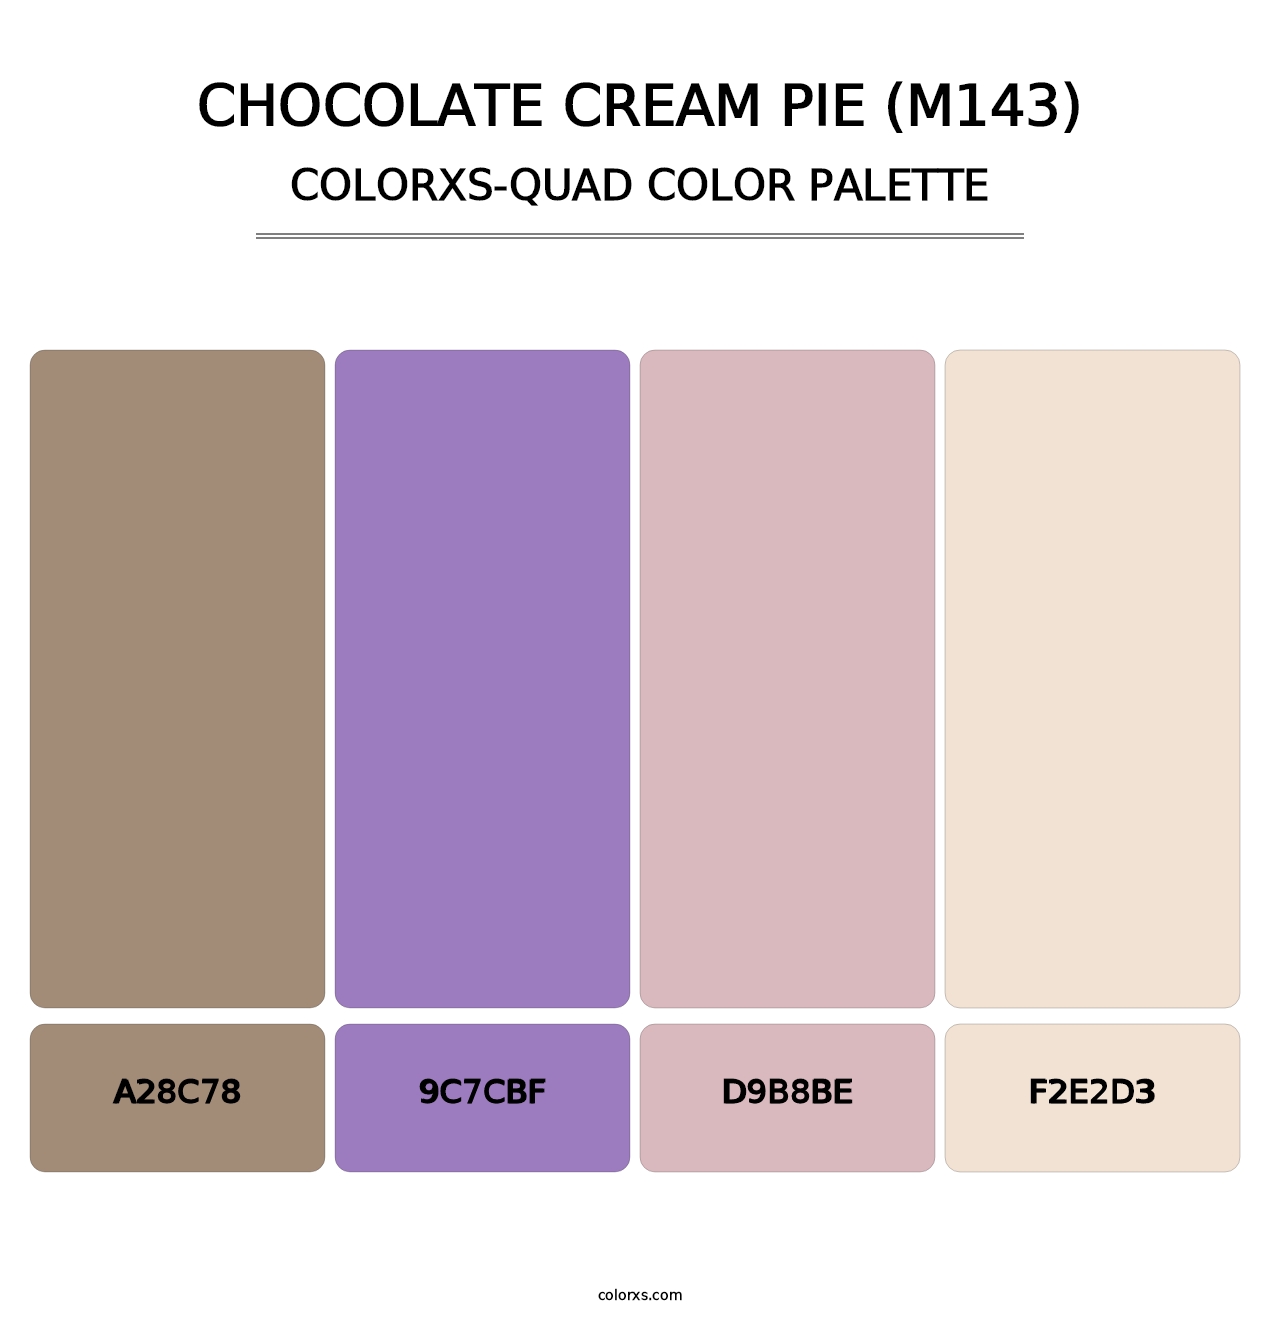 Chocolate Cream Pie (M143) - Colorxs Quad Palette